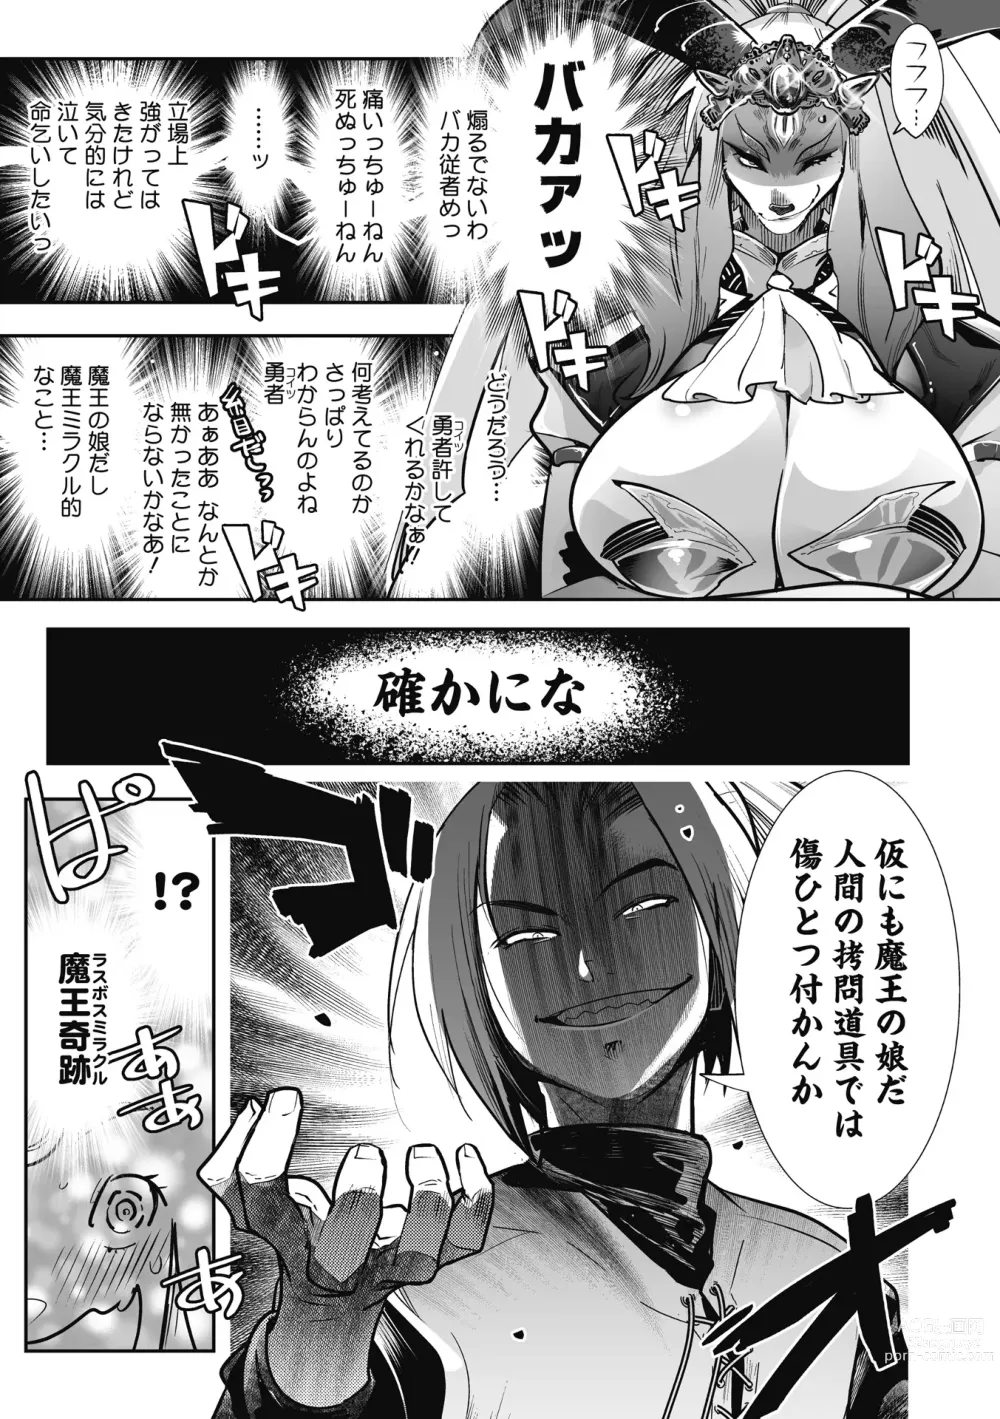 Page 11 of manga Kemono to Koishite Nani ga Warui!